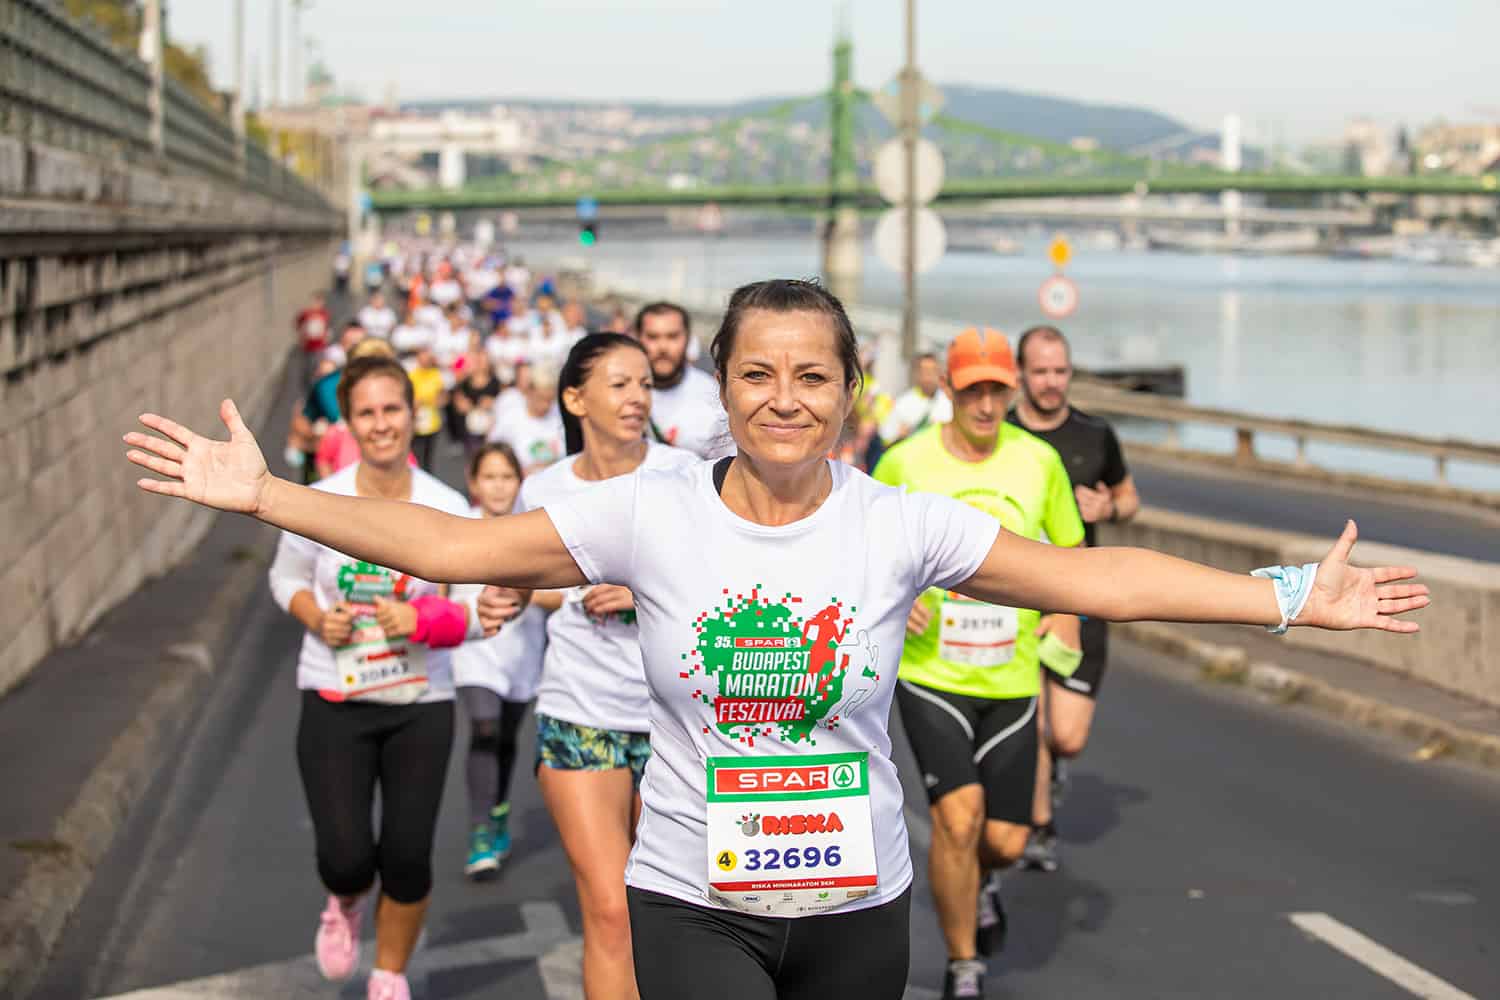 39 hetes, ingyenes edzésterv indul a SPAR Budapest Maratonra